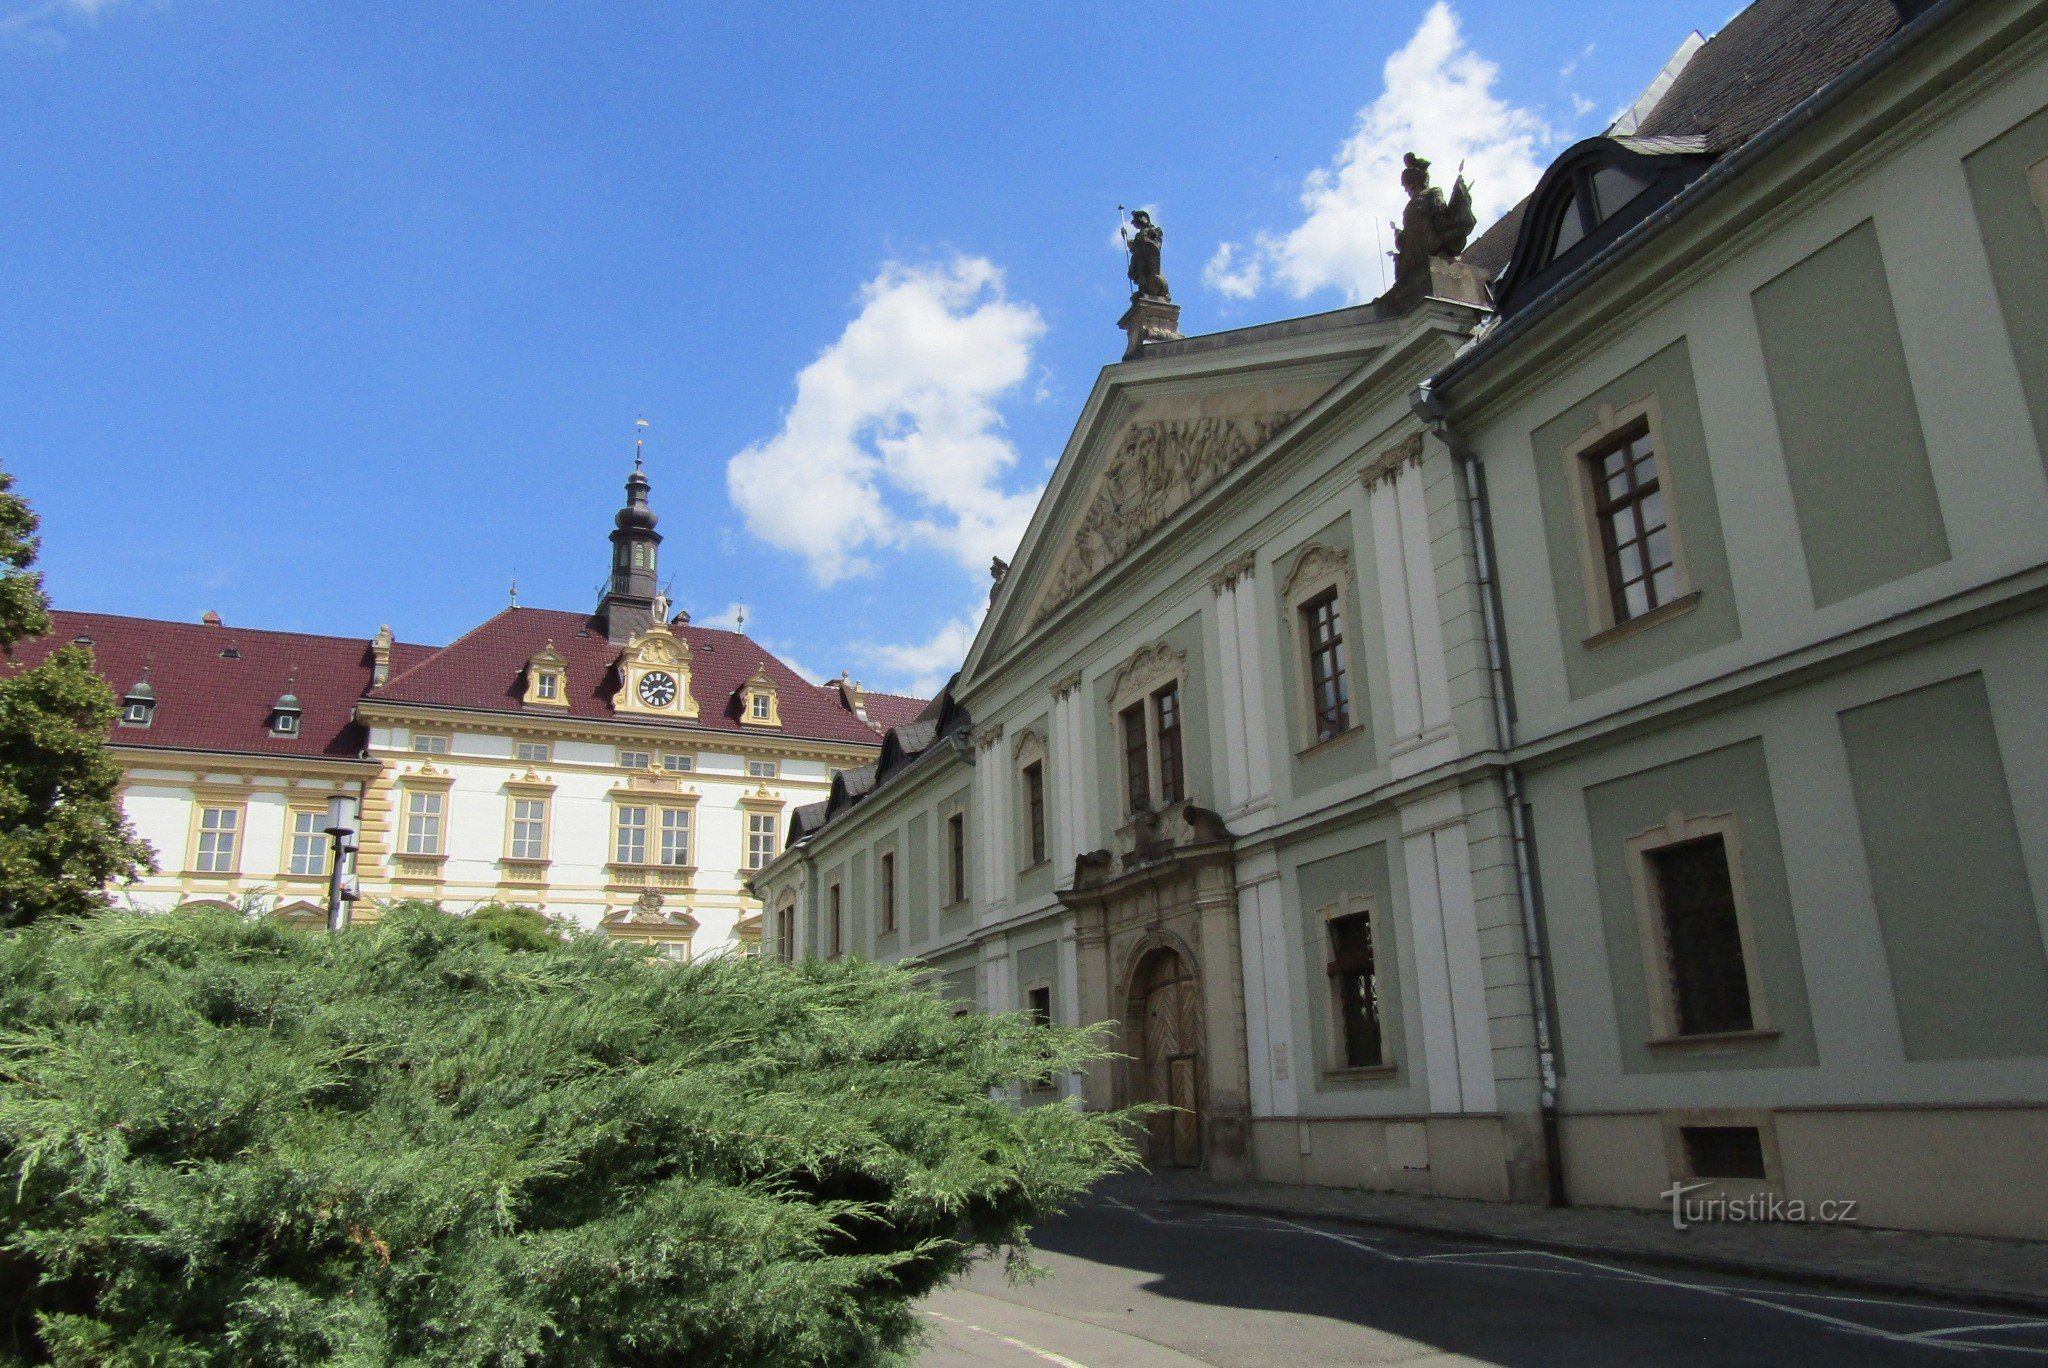 Tại thủ đô Hané - thành phố Olomouc